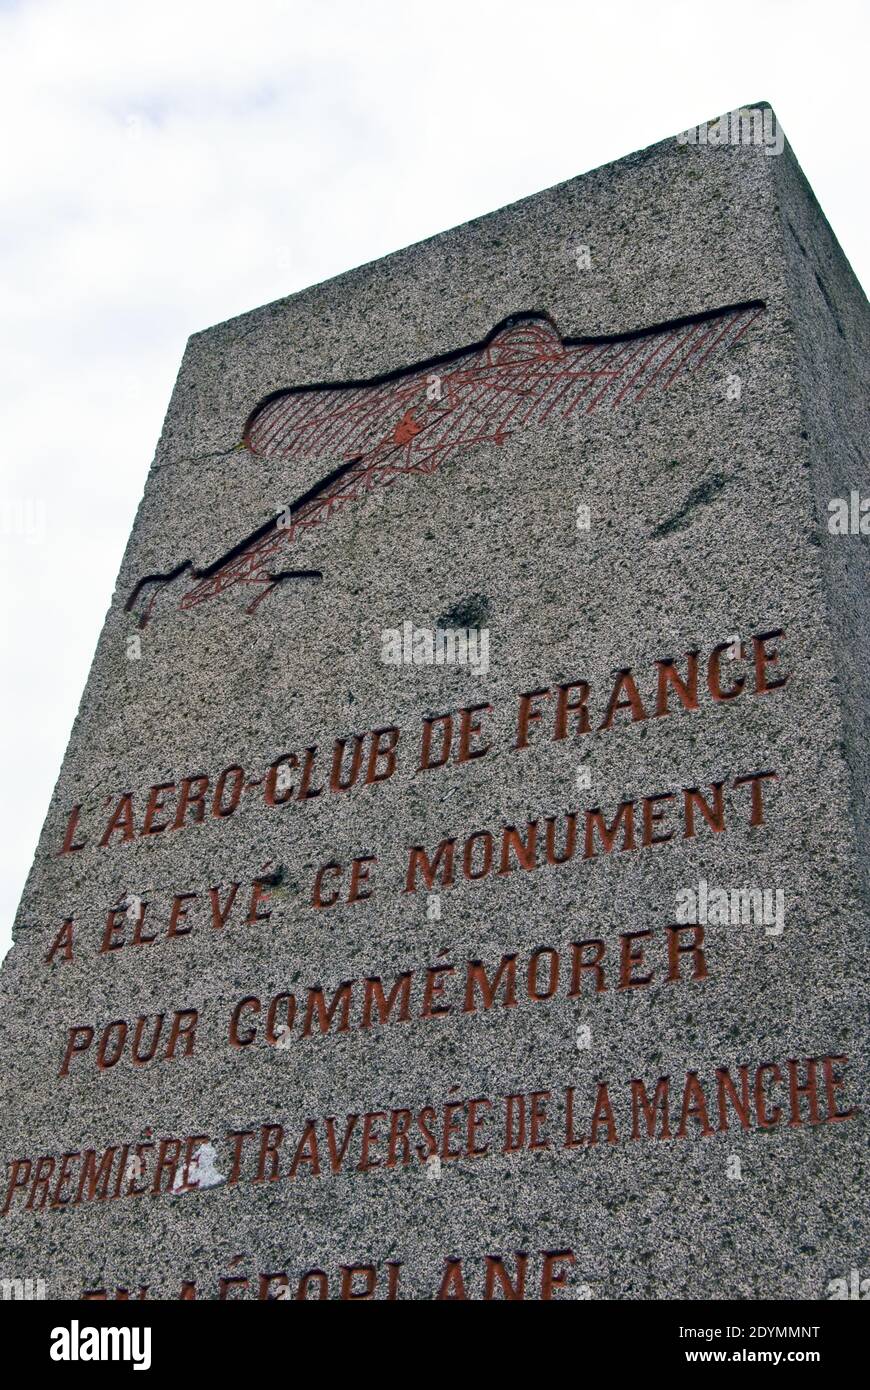 Un monumento per commemorare Louis Bleriot, la prima persona a volare attraverso il canale in inglese, sorge a Sangatte, Francia. Foto Stock